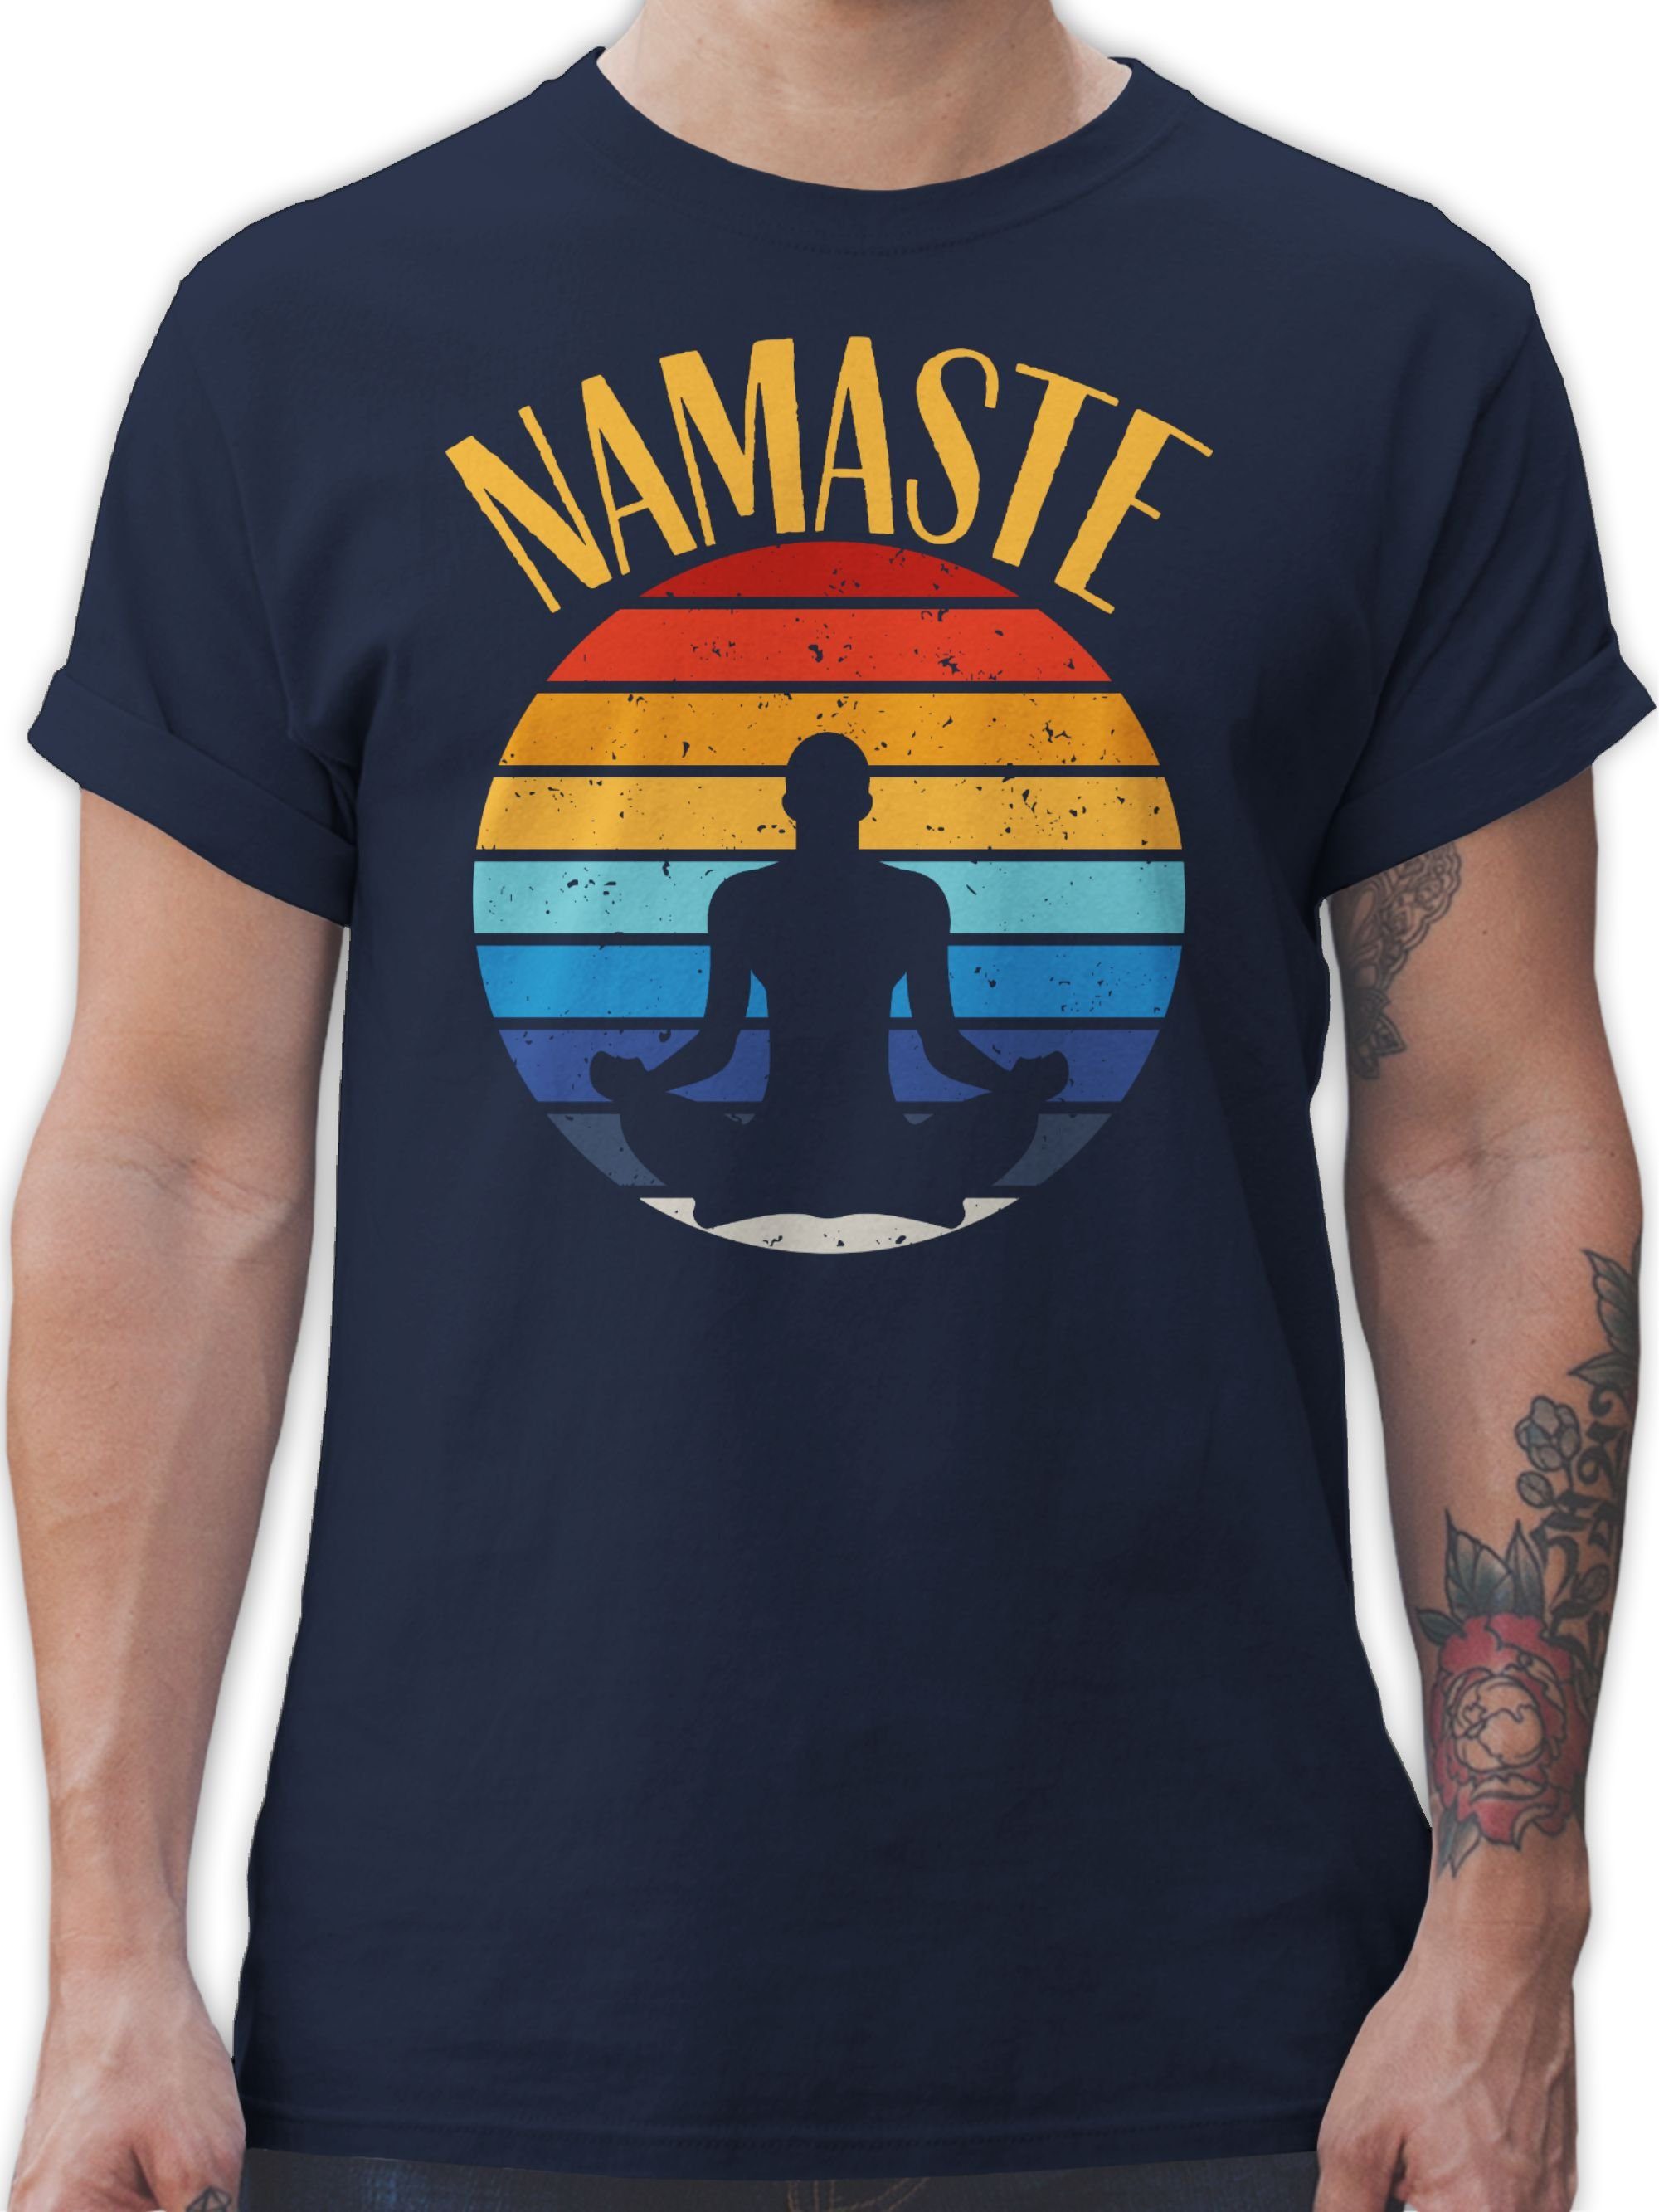 Shirtracer T-Shirt Namaste bunt Yoga und Wellness Geschenk 02 Navy Blau